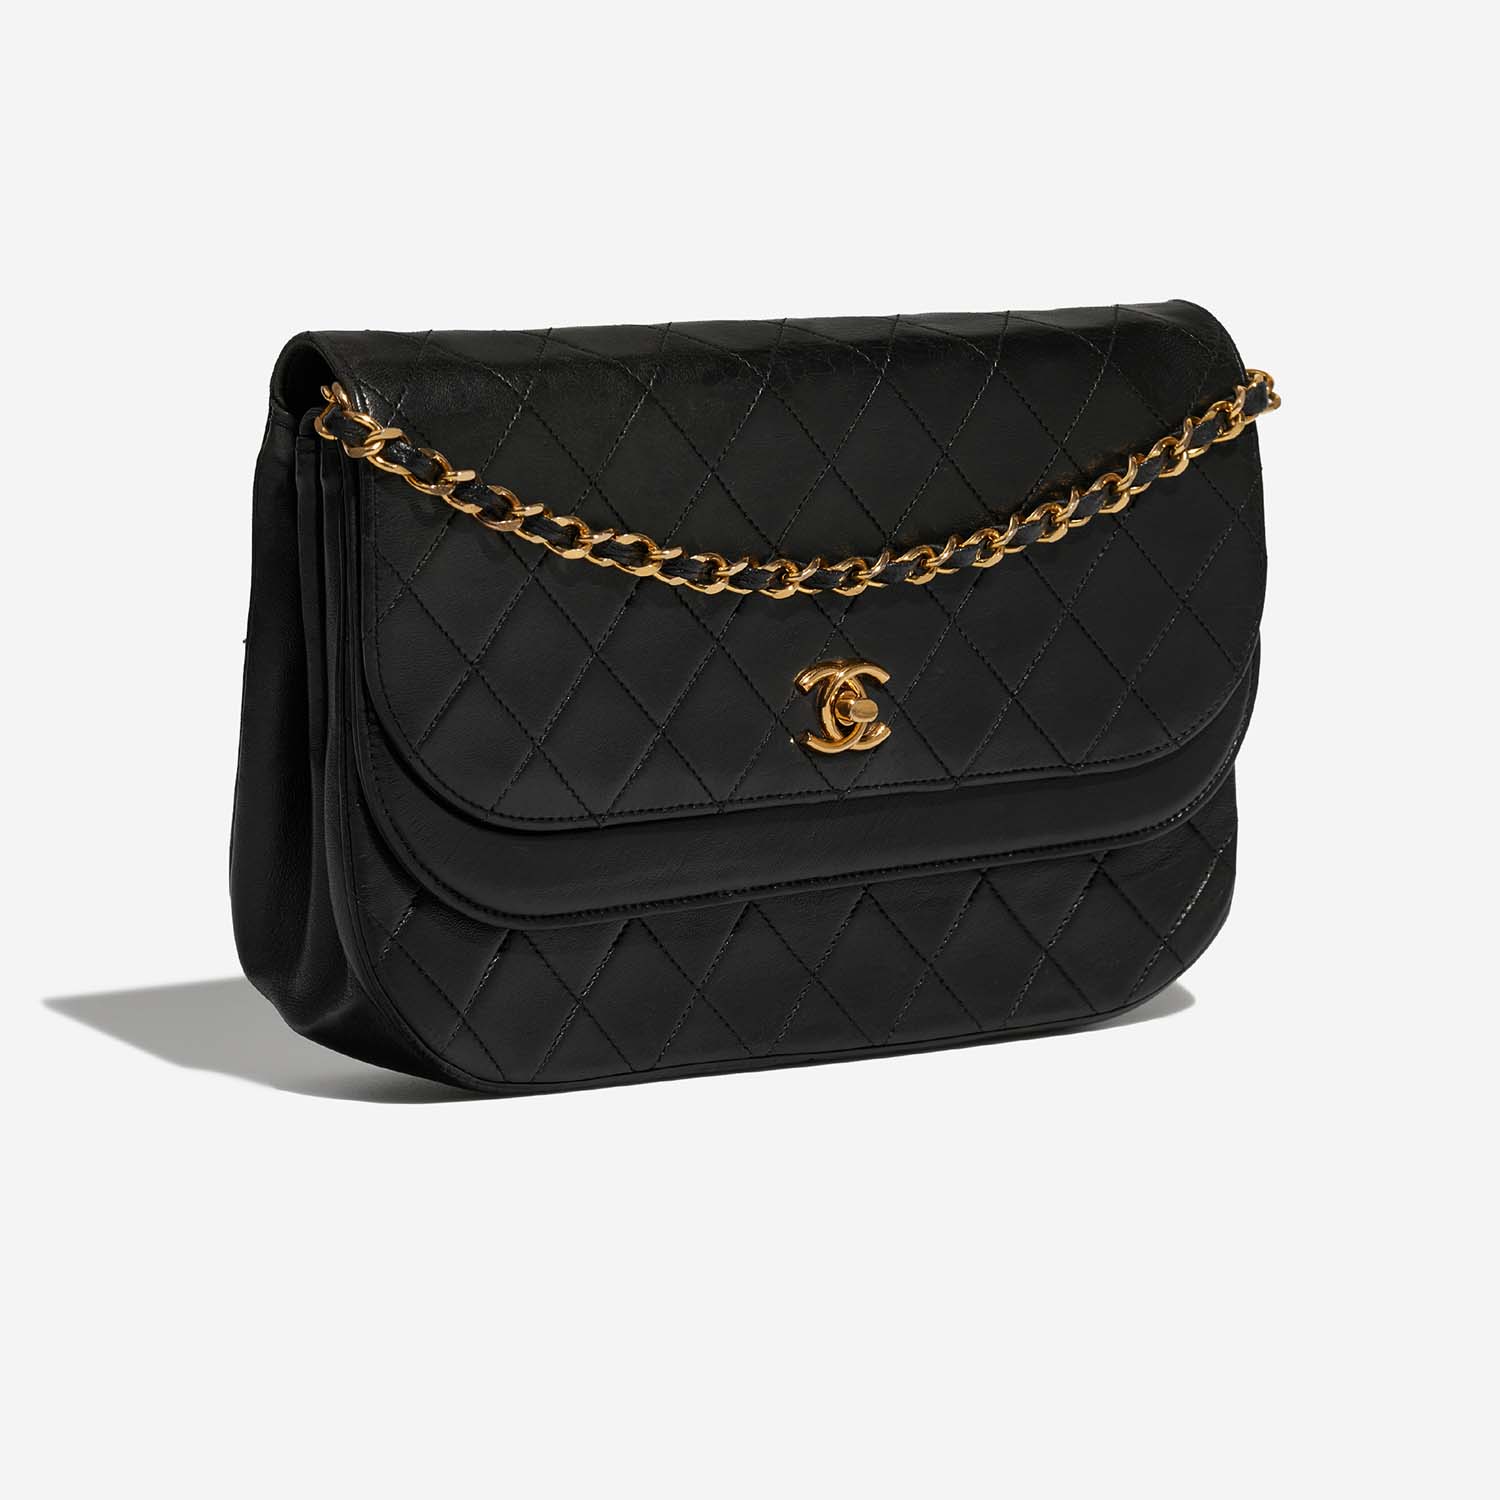 Chanel Timeless DoubleFlap Black Side Front | Verkaufen Sie Ihre Designer-Tasche auf Saclab.com